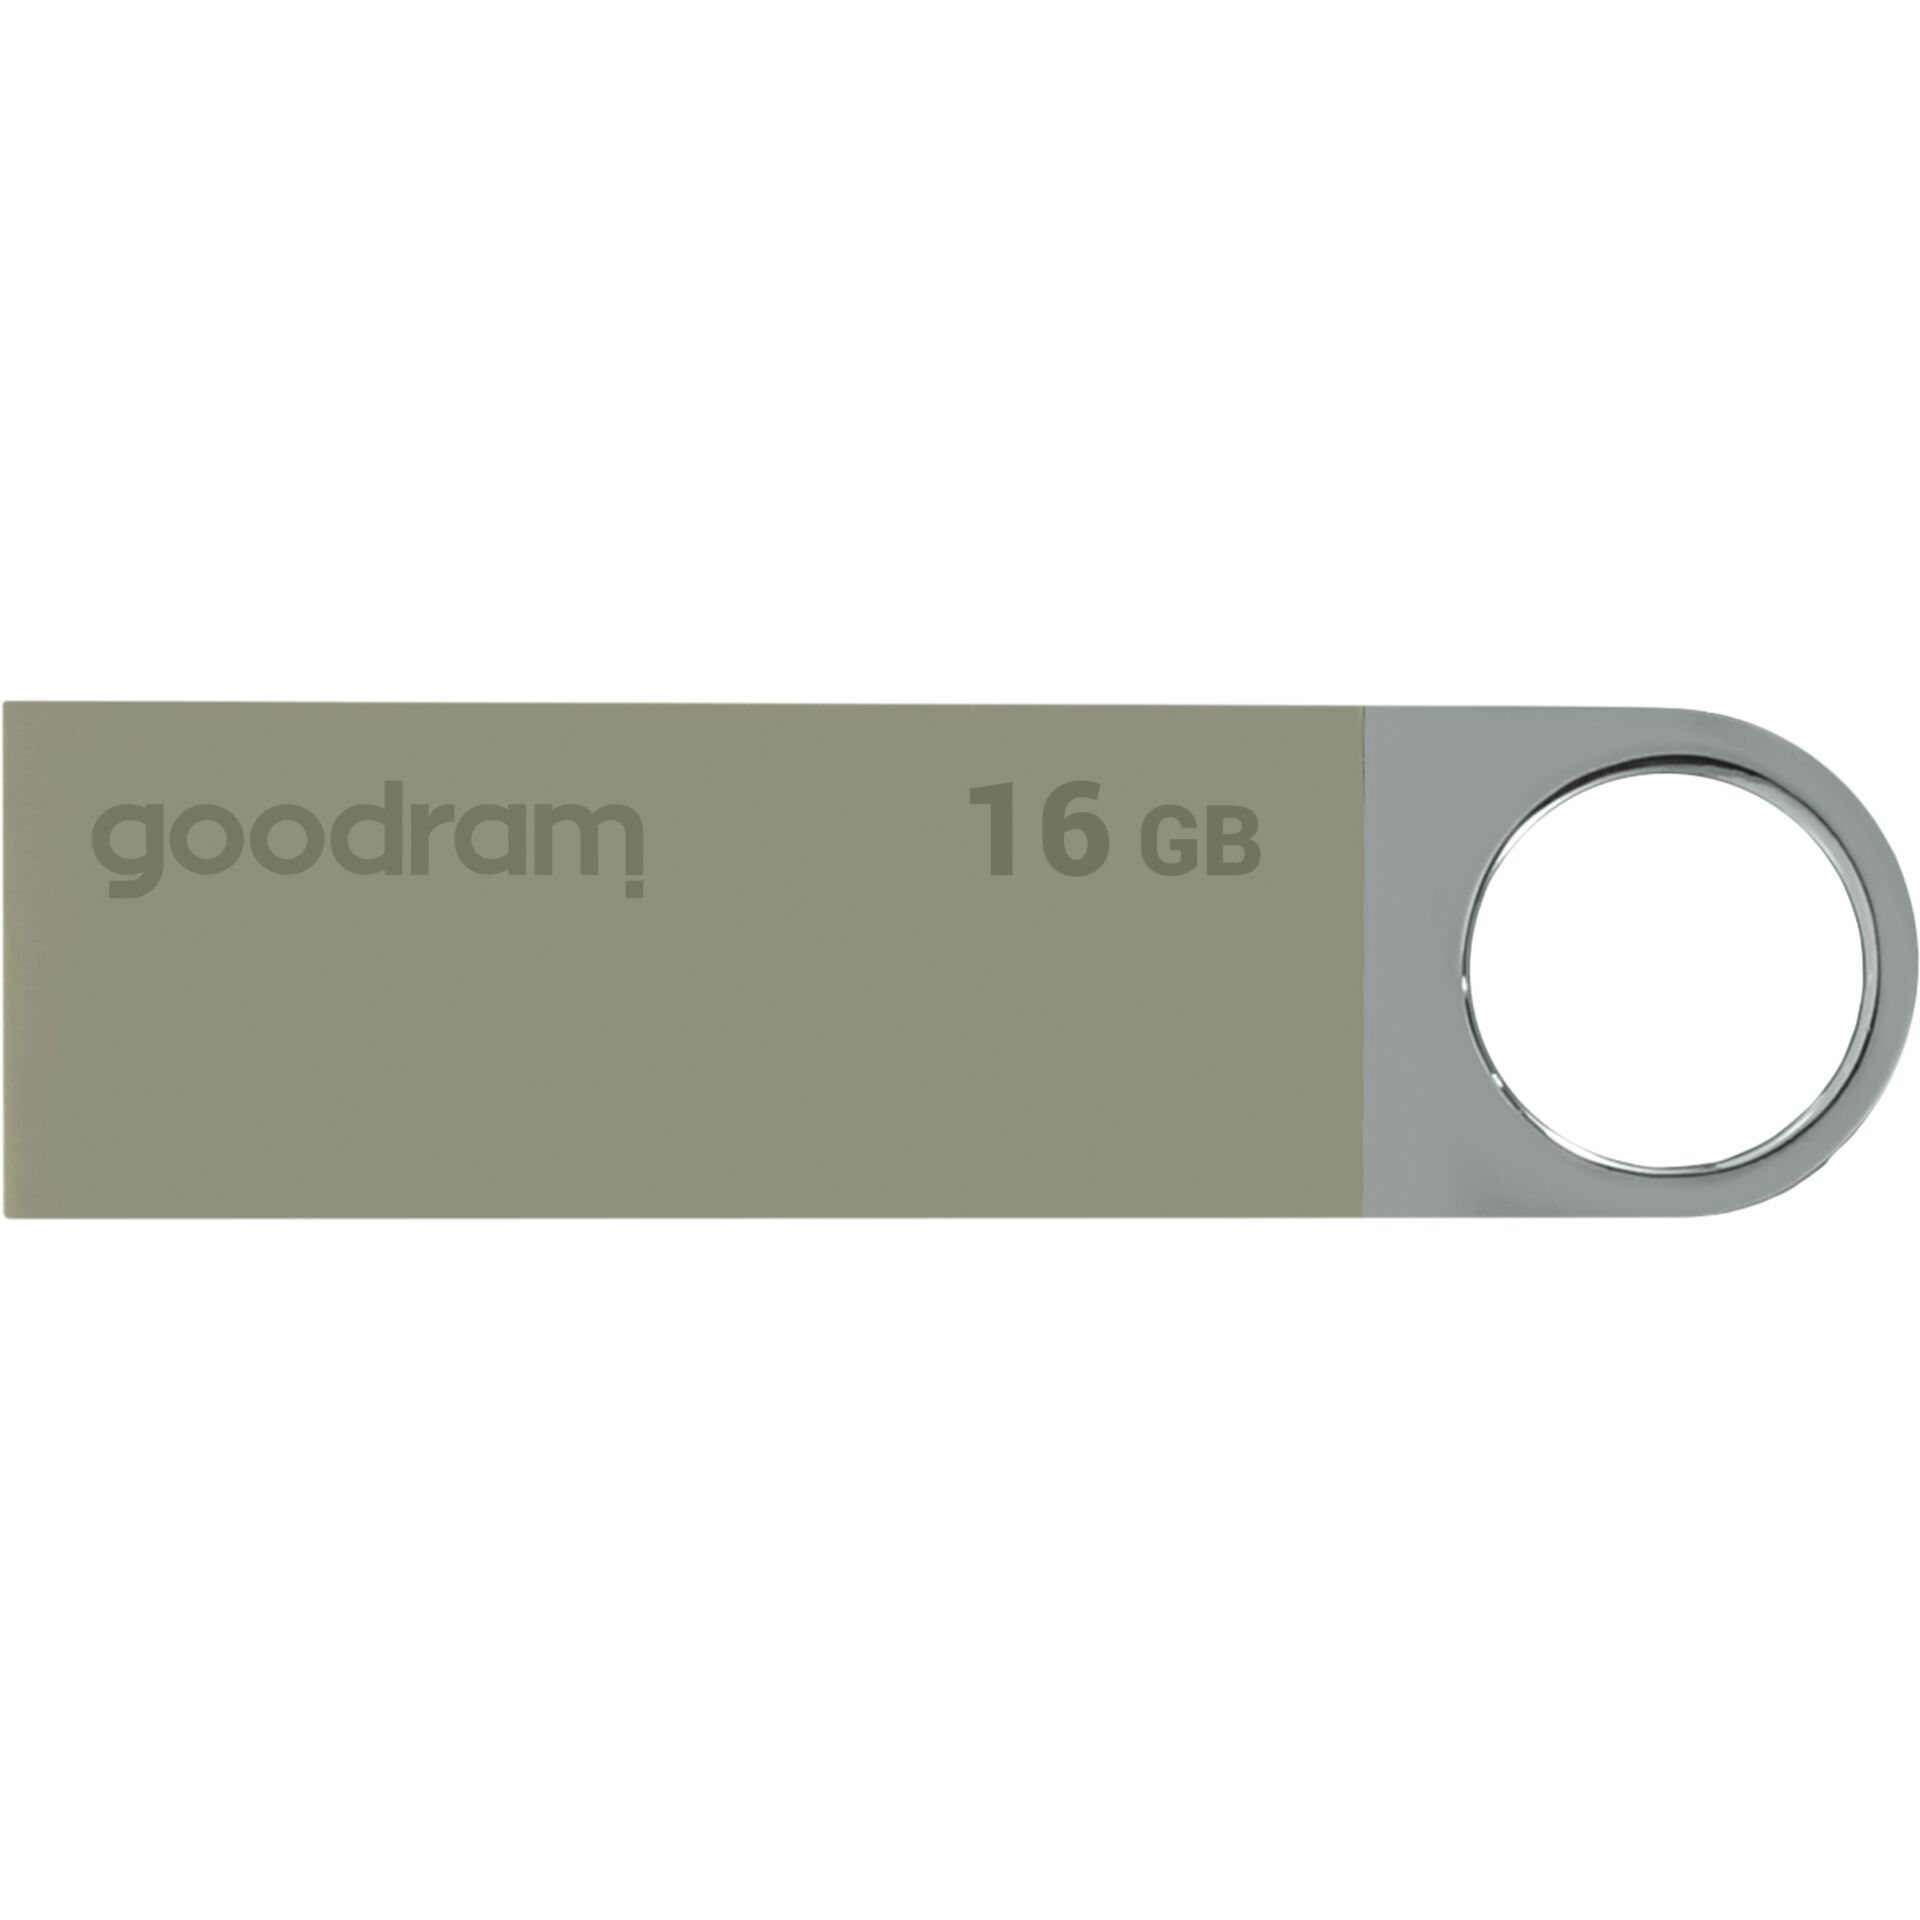 GOODRAM UUN2 USB 2.0        16GB Silver